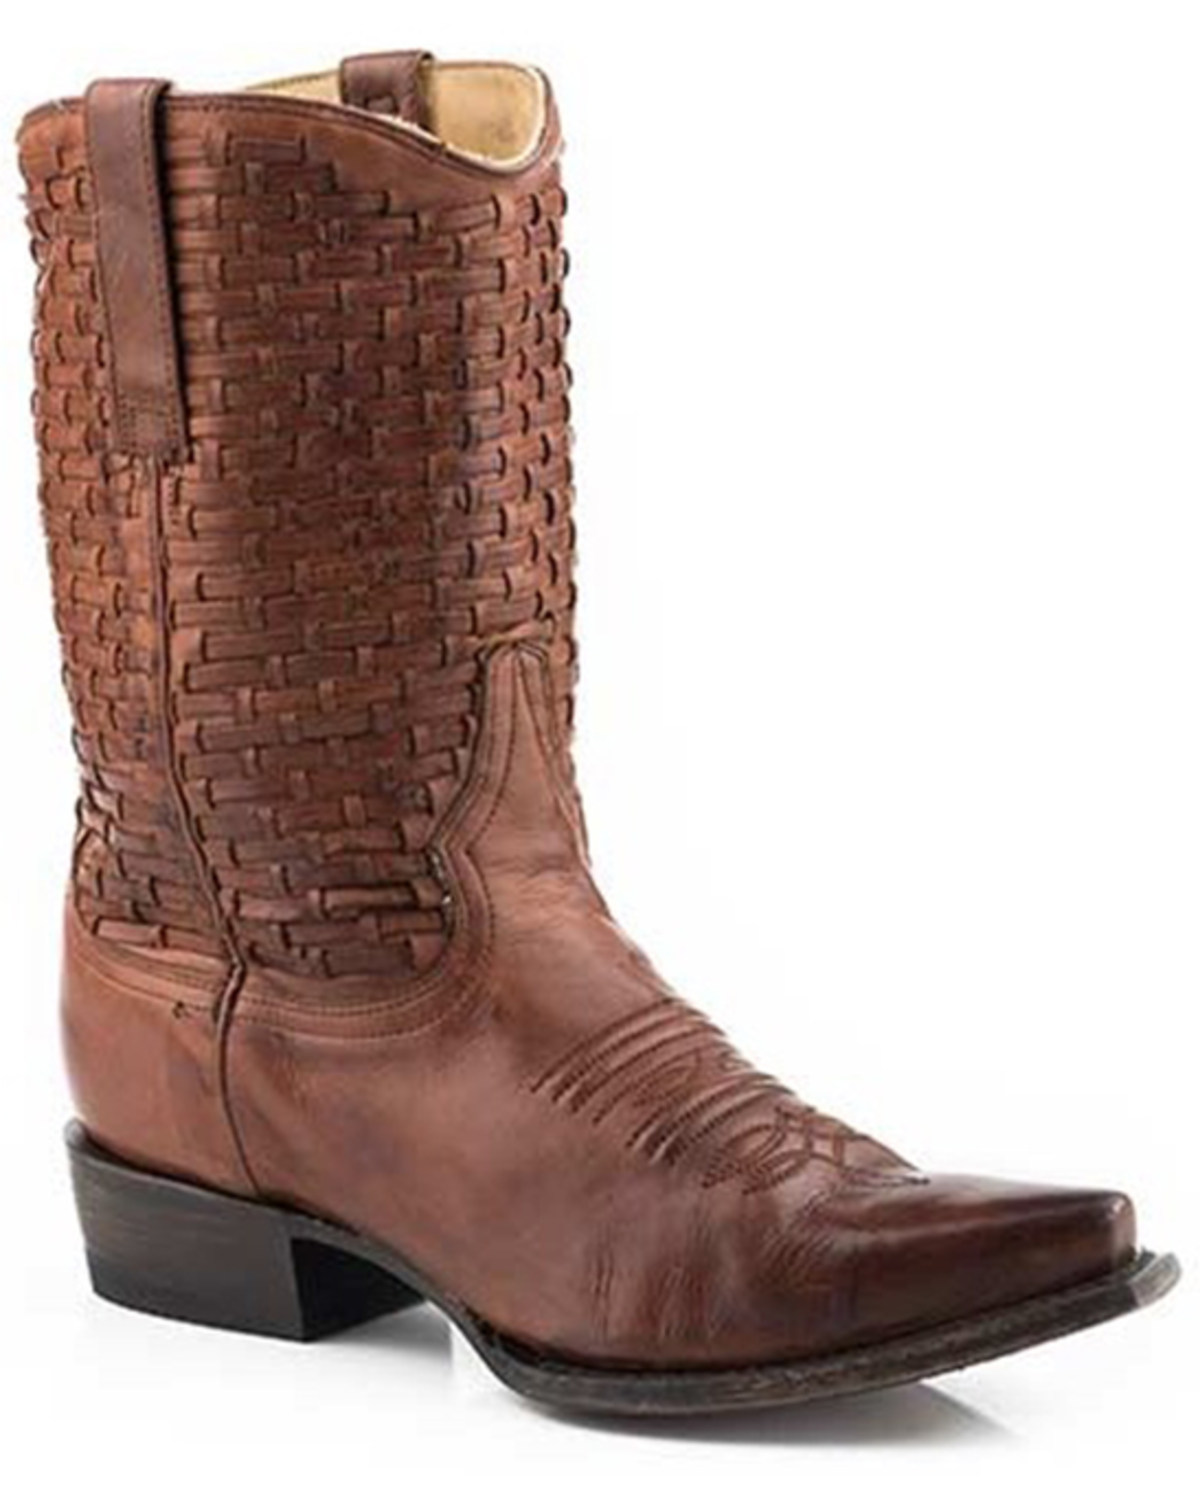 Stetson Women's Calf Western Boots - Snip Toe